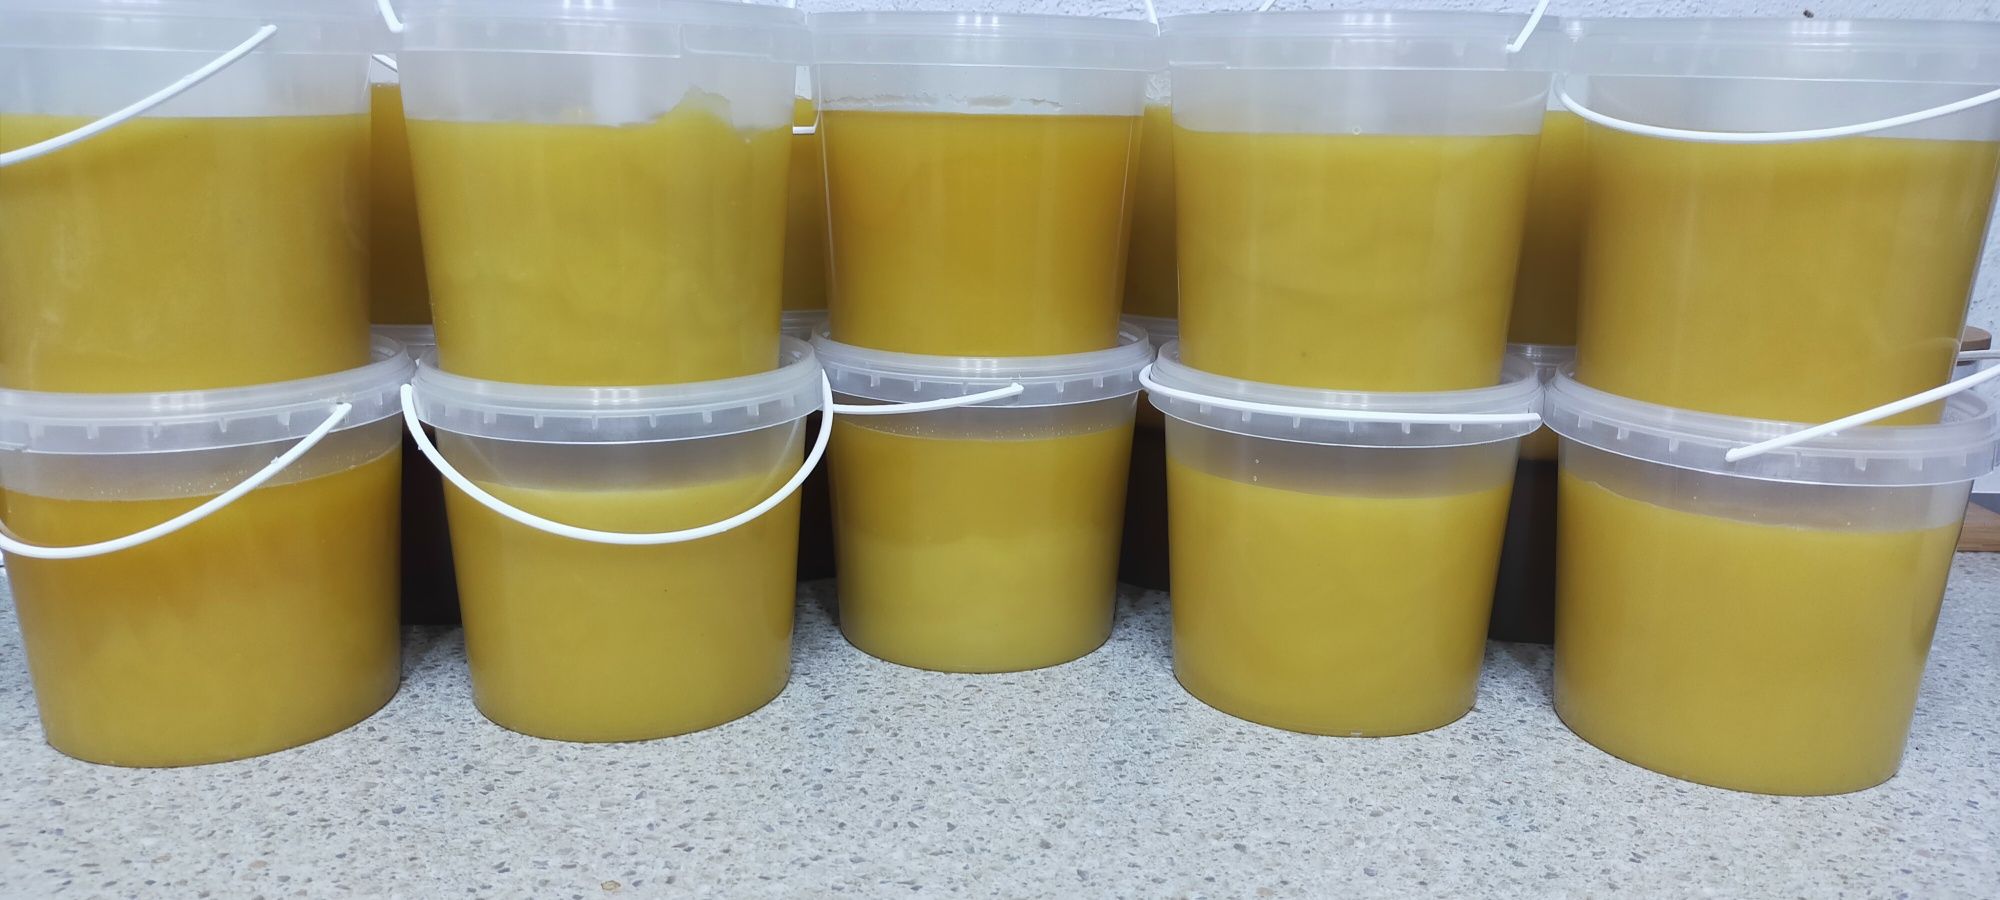 Продам мёд привезен из ВКО город Алтай